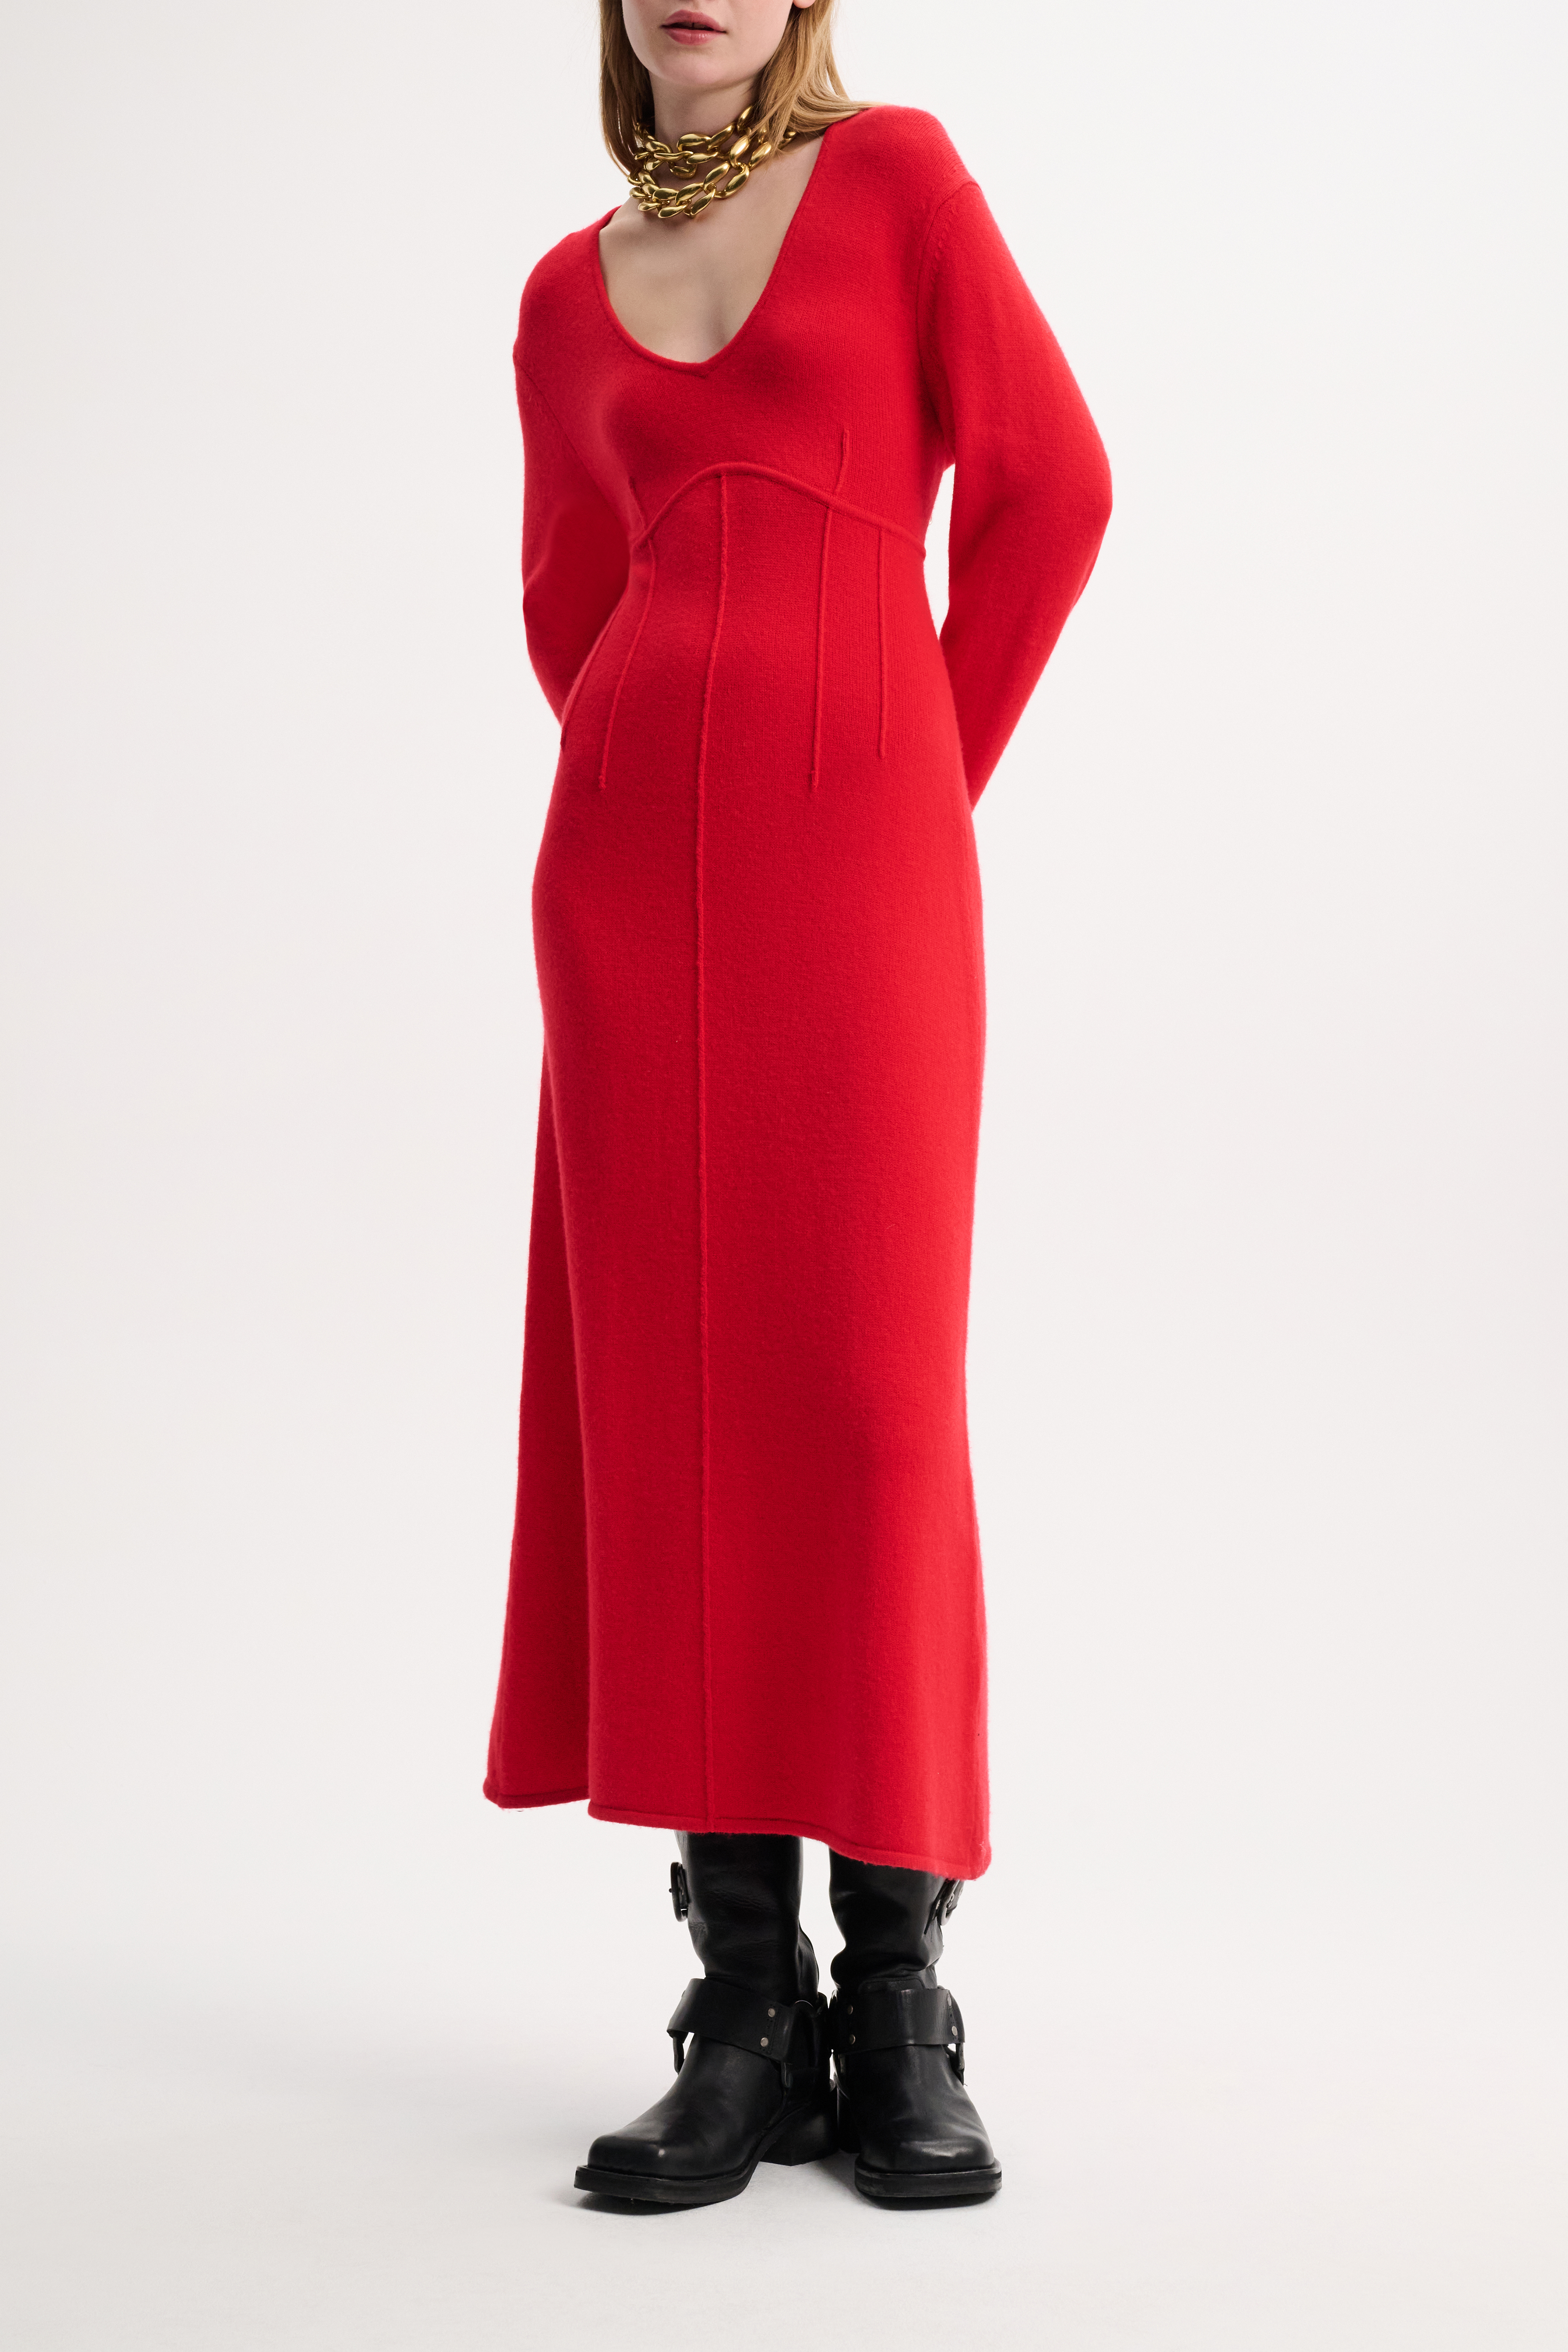 Dorothee Schumacher Knit dress with seam